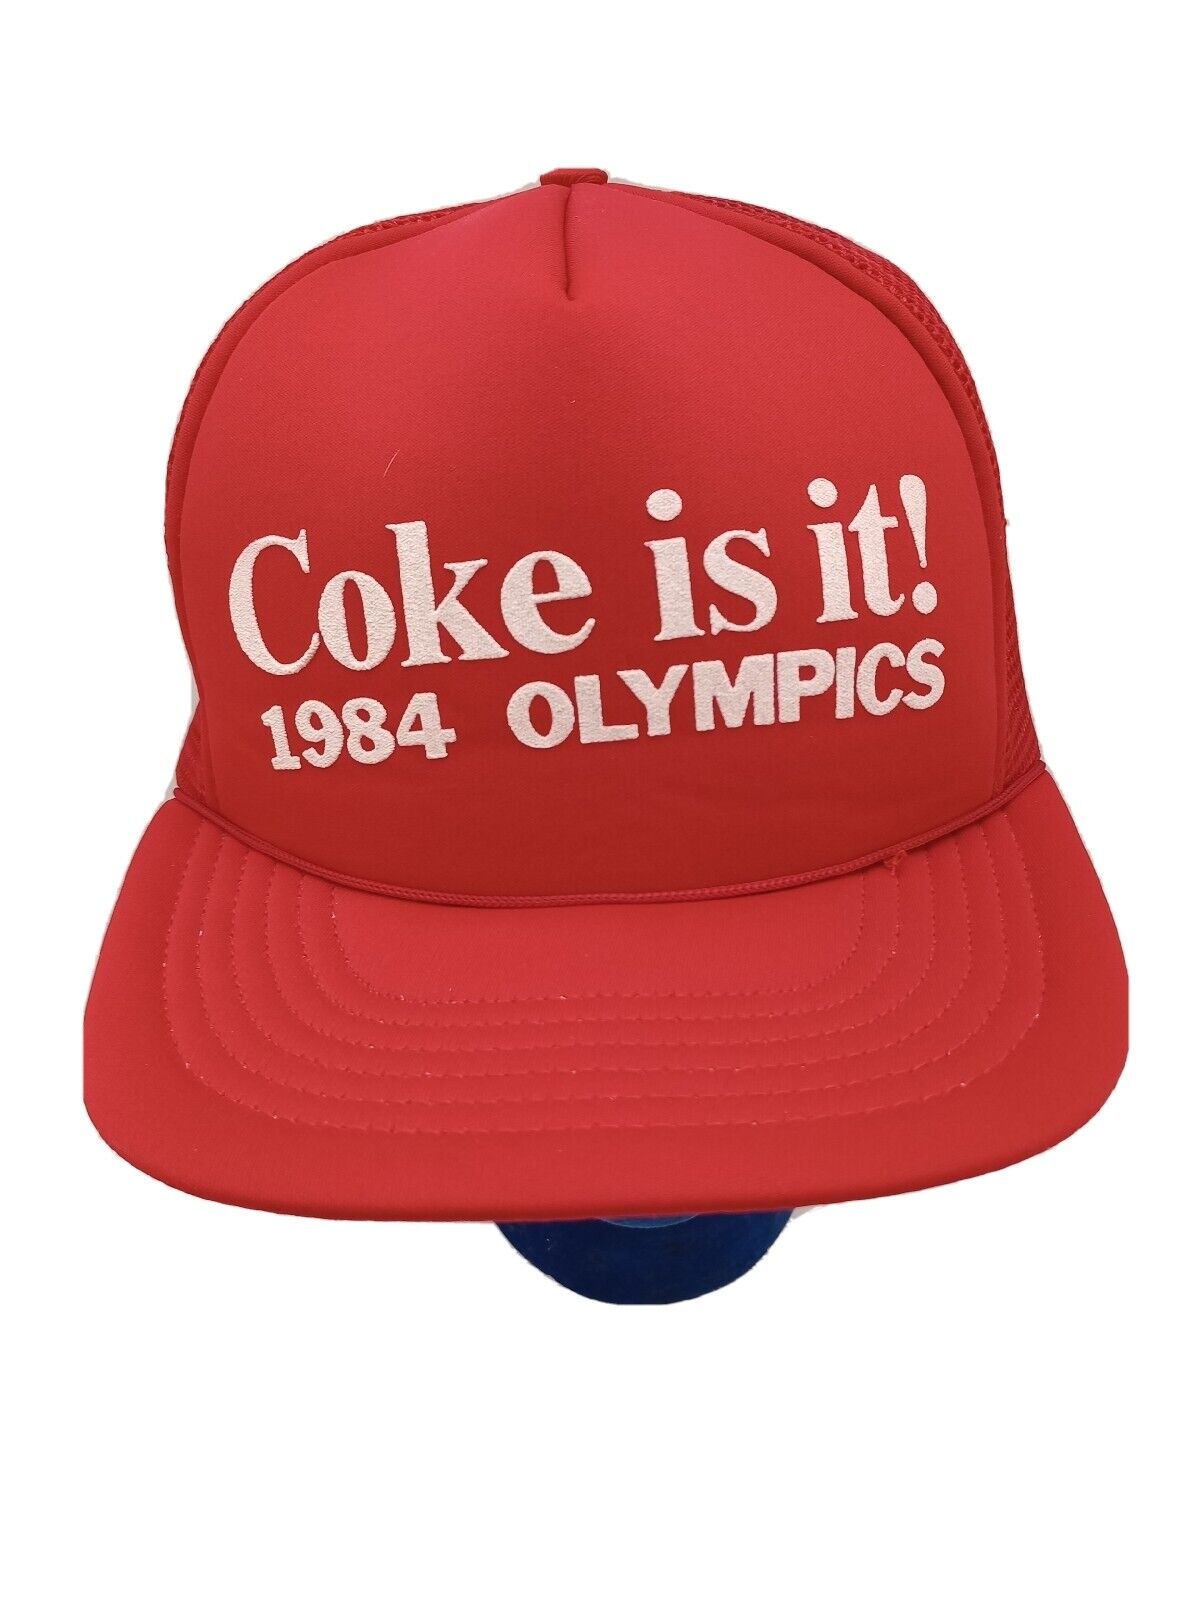 Vtg 1984 Coke Is It, Olympics Red Mesh Snapback Trucker Hat, Estate Sale 